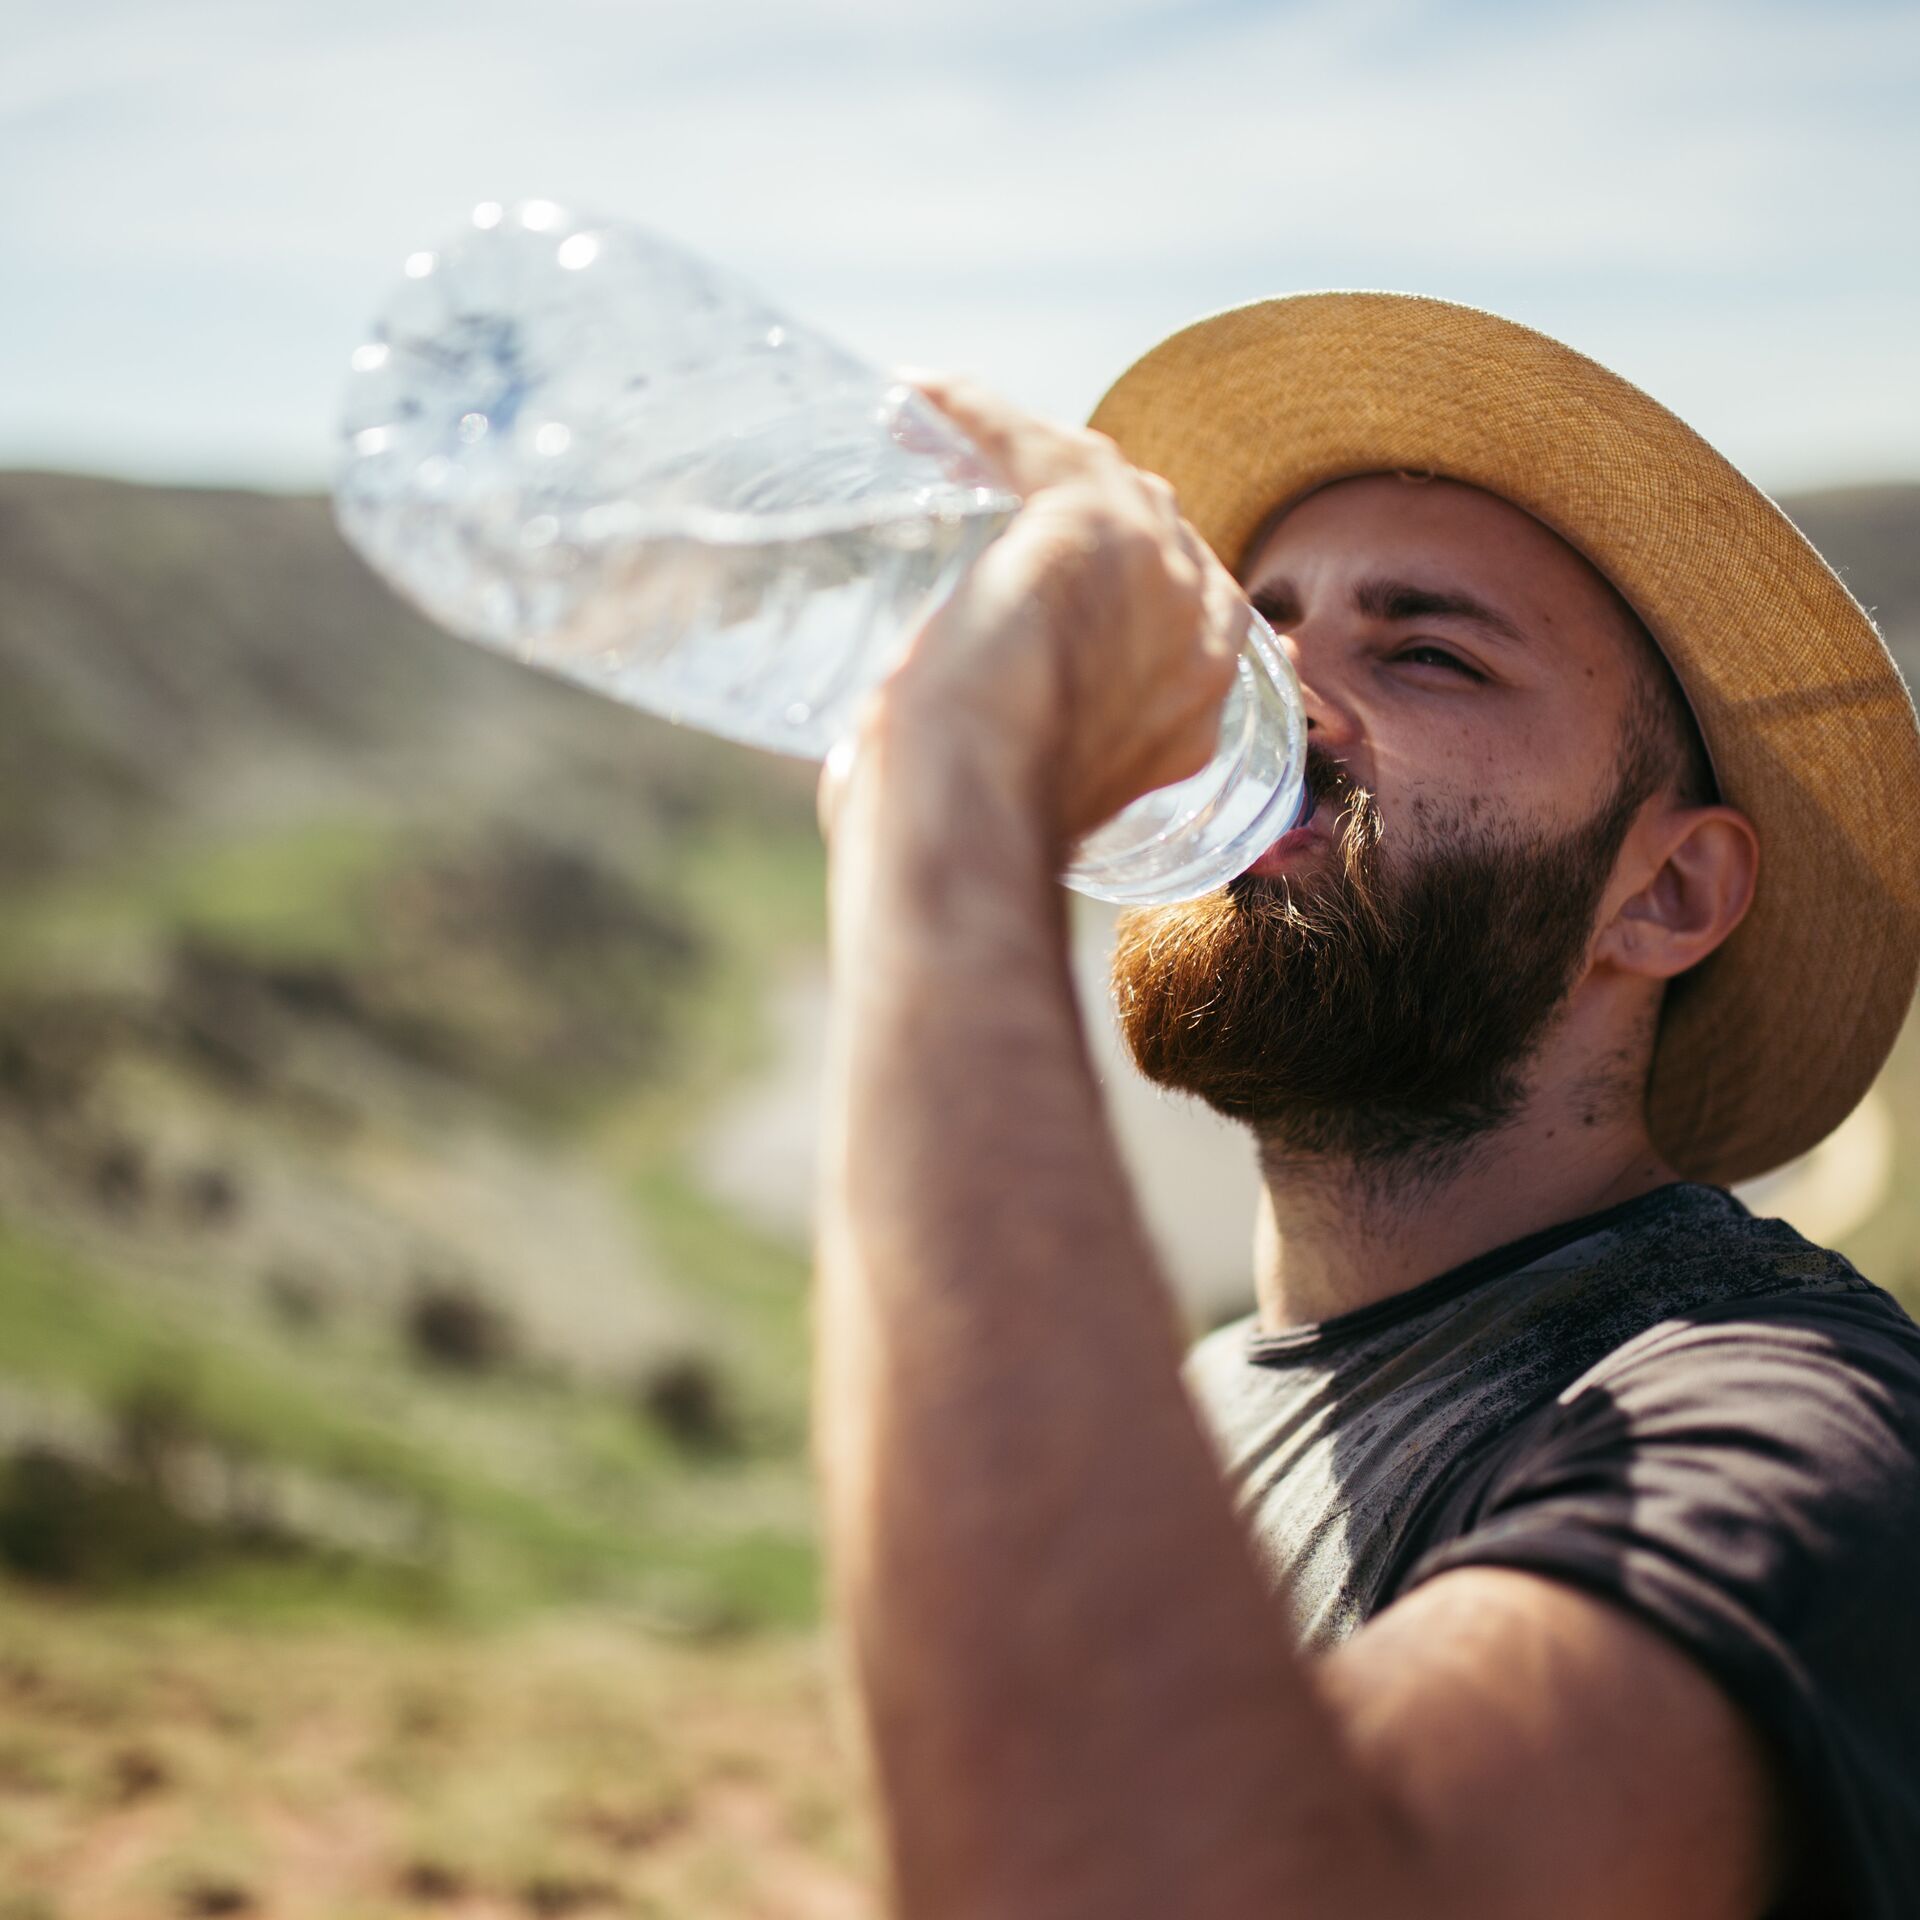 Вода в жару. Пить воду. Бутылка воды жара. Фото пьющего воду человека в жару Красноярск.